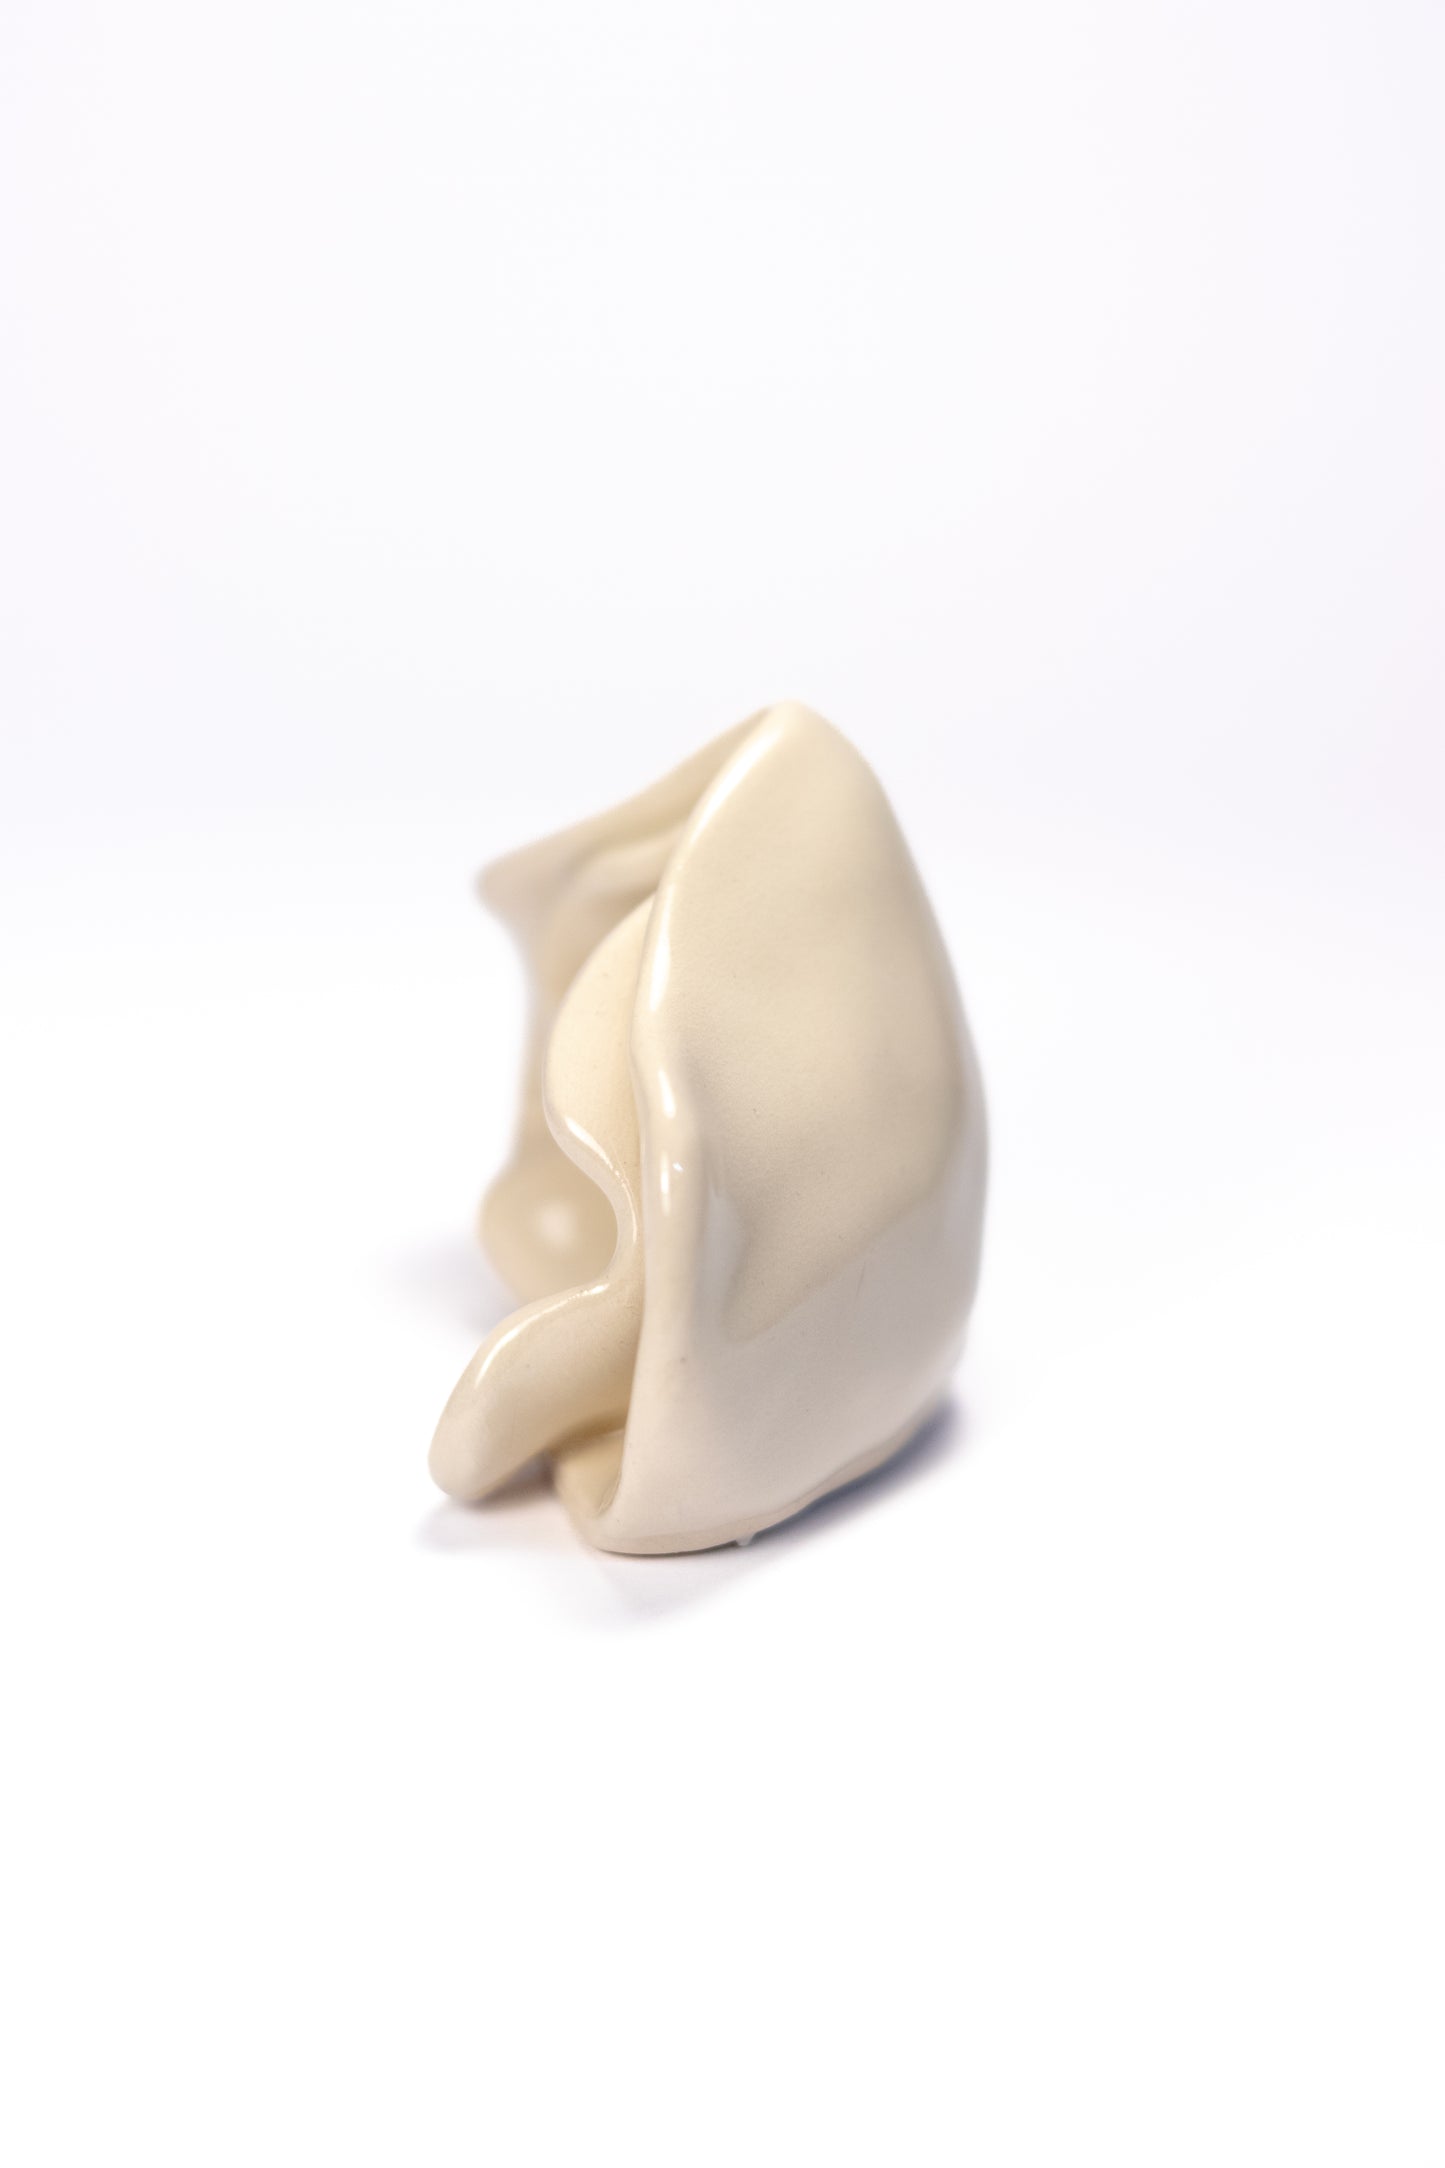 small vulva sculpture